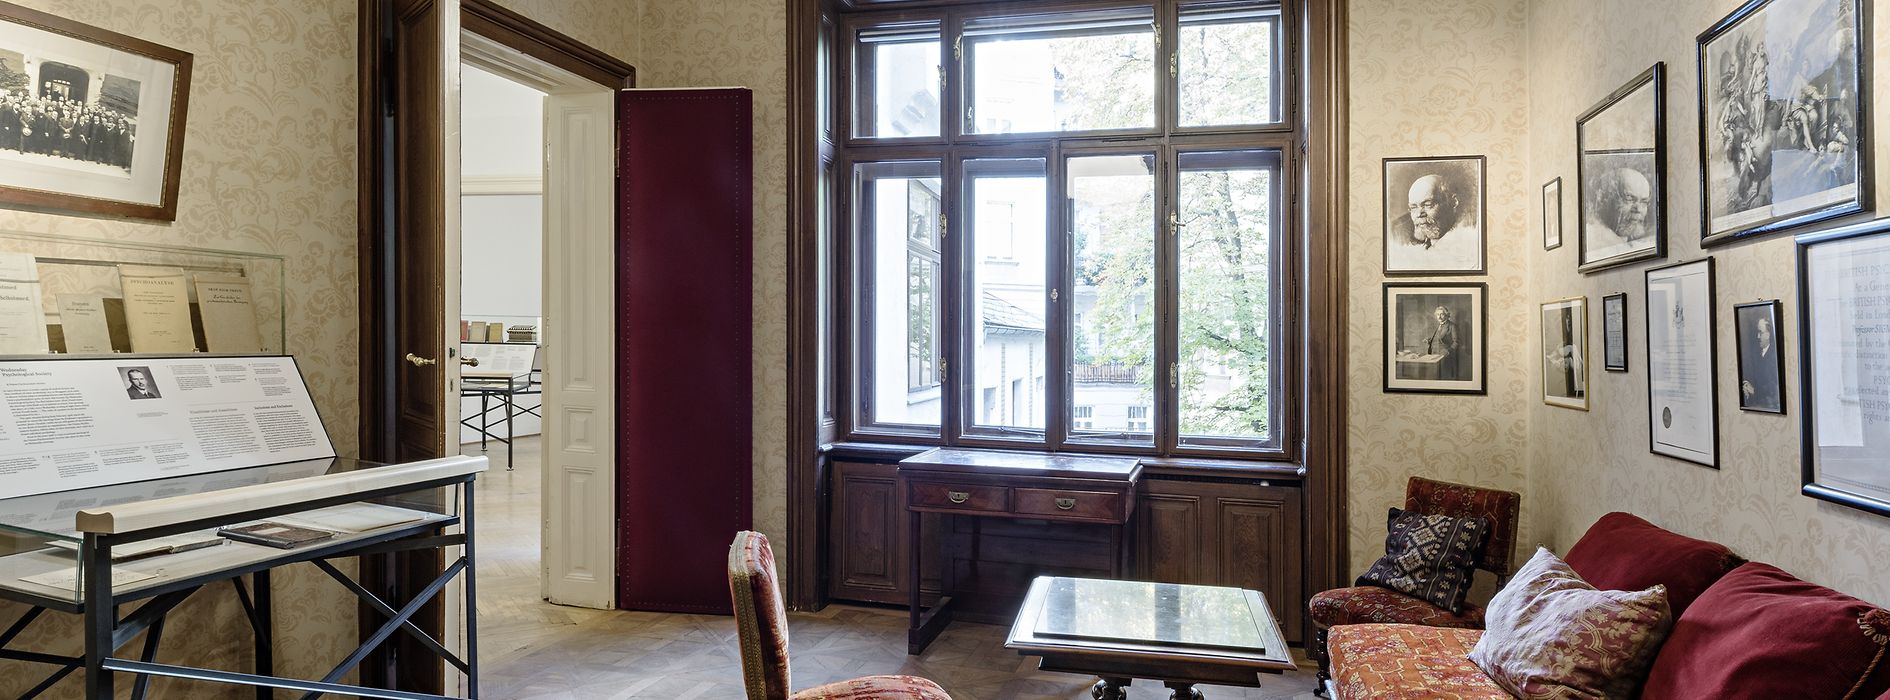 Sala de espera con muebles originales del Museo Sigmund Freud 